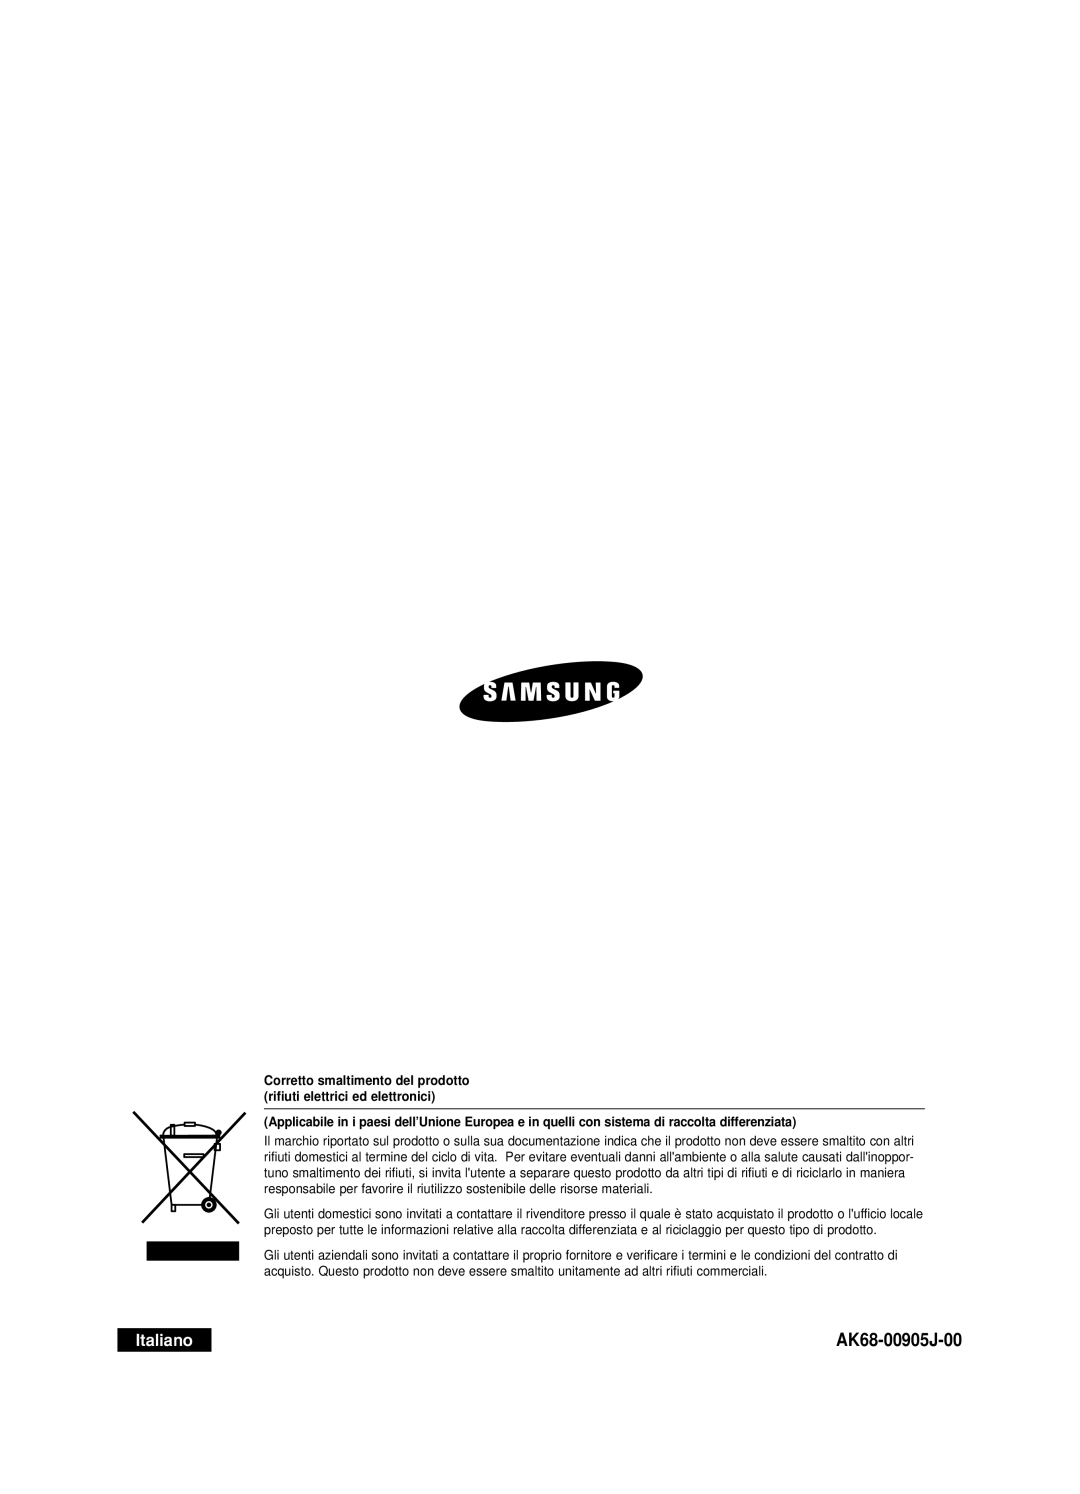 Samsung DVD-R121E/XEG manual AK68-00905J-00, Italiano, Corretto smaltimento del prodotto rifiuti elettrici ed elettronici 